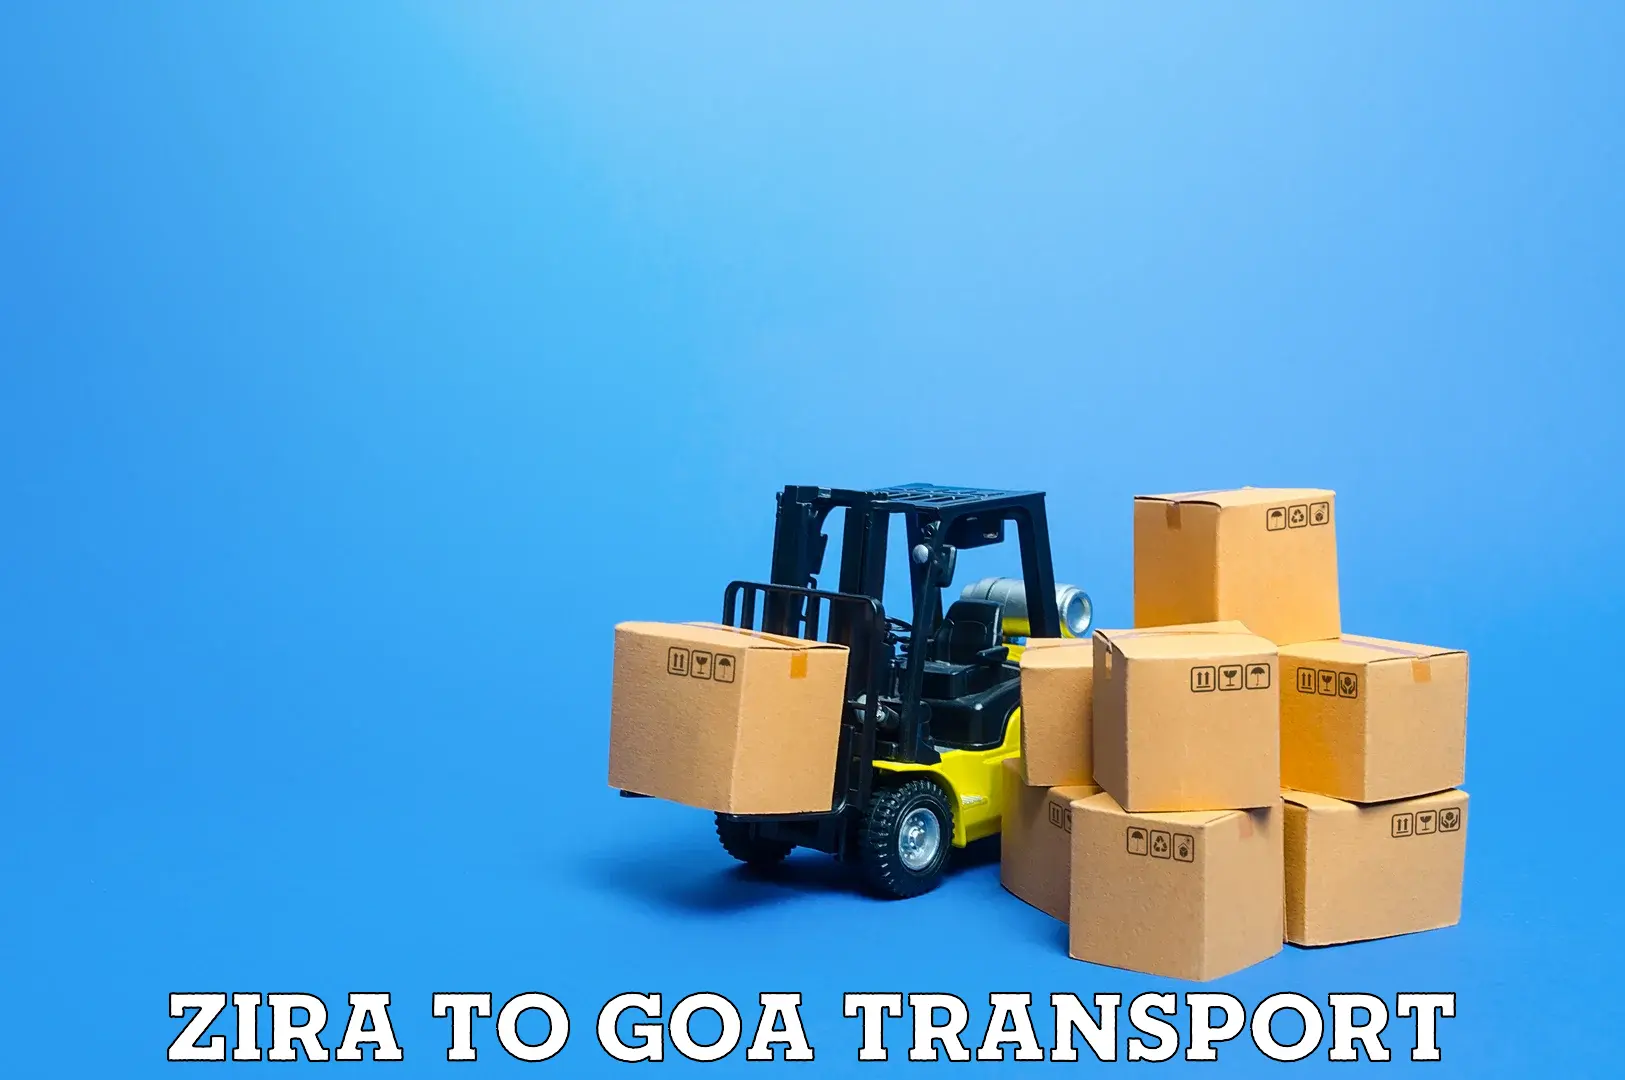 Express transport services Zira to Vasco da Gama